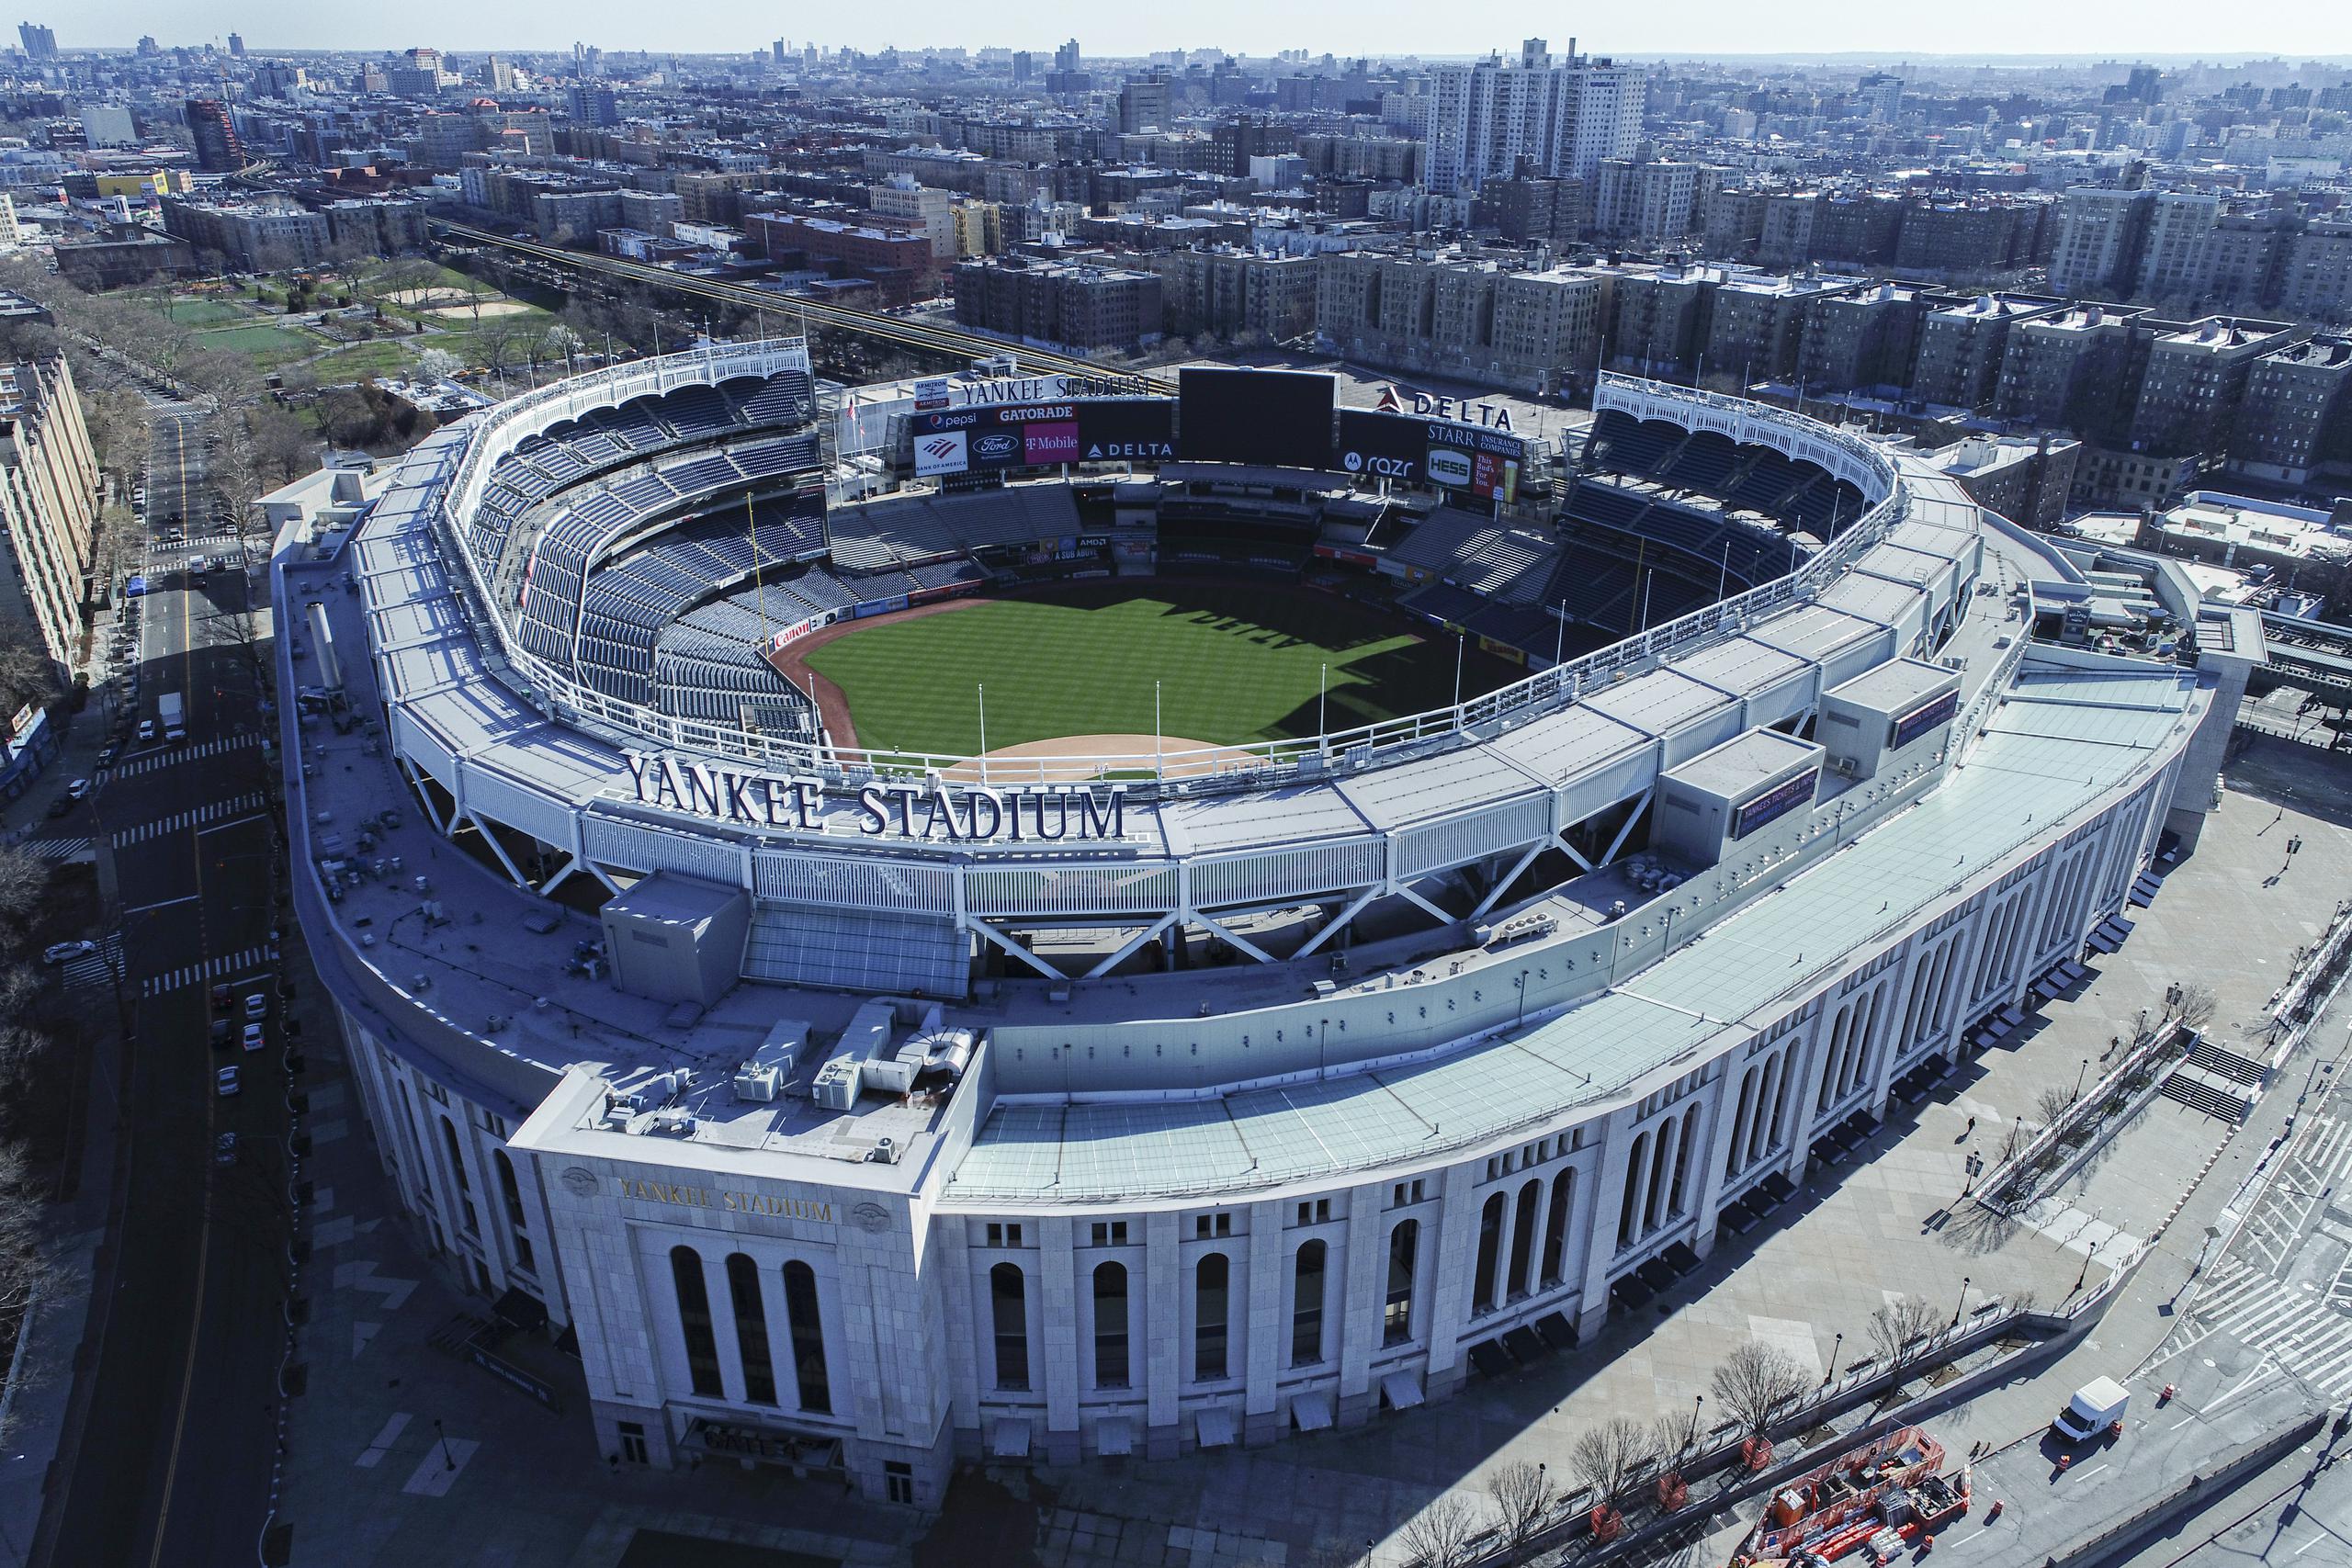 Vista aérea del Yankee Stadium en Nueva York. El estadio podría ser utilizado para práctica y juegos, sin MLB activa su temporada.